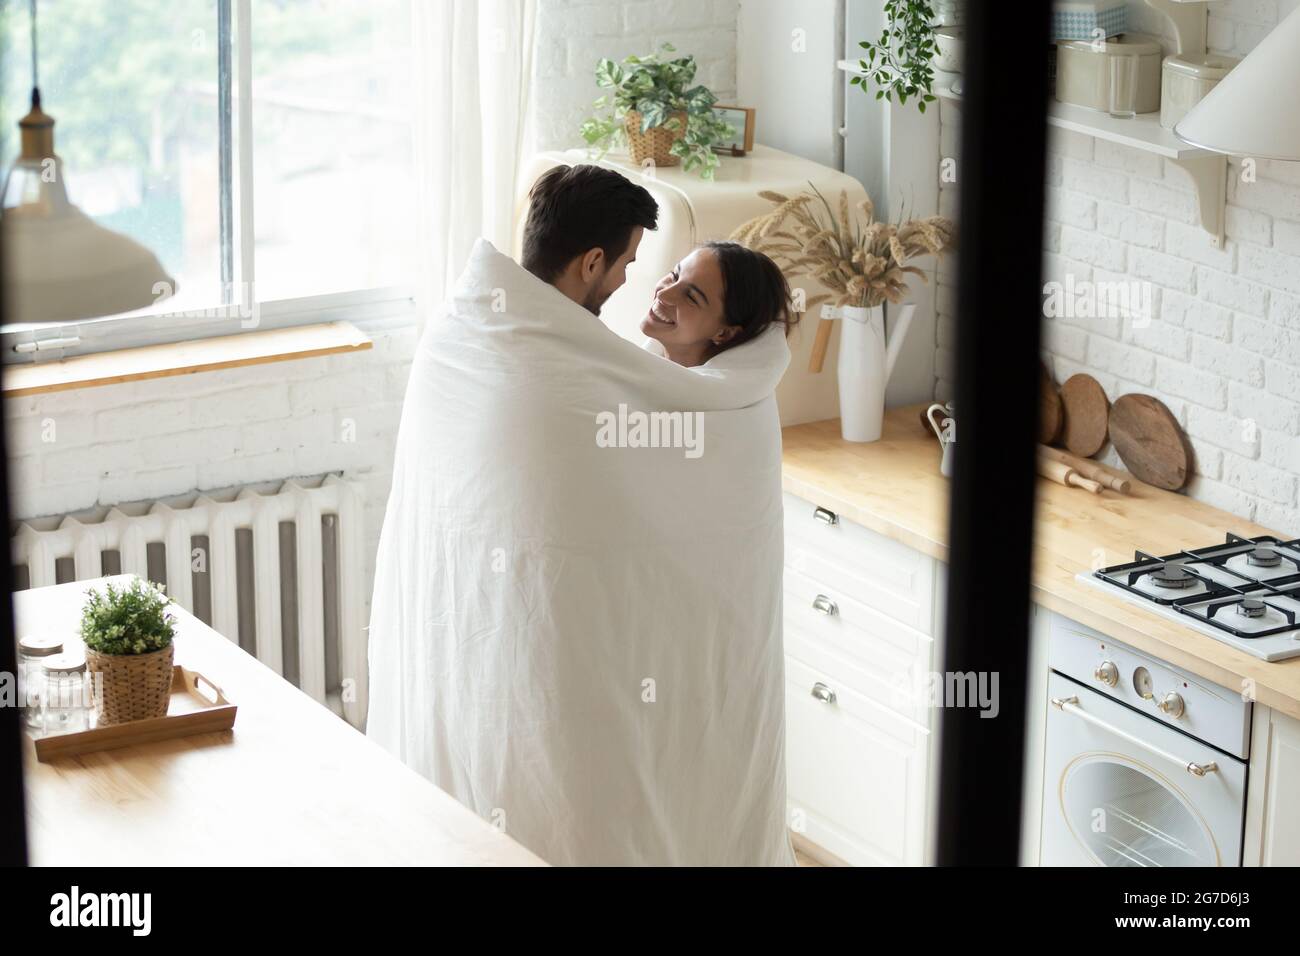 Liebevolles Paar, das in einer modernen Küche in einer Decke zusammengehüllt steht Stockfoto